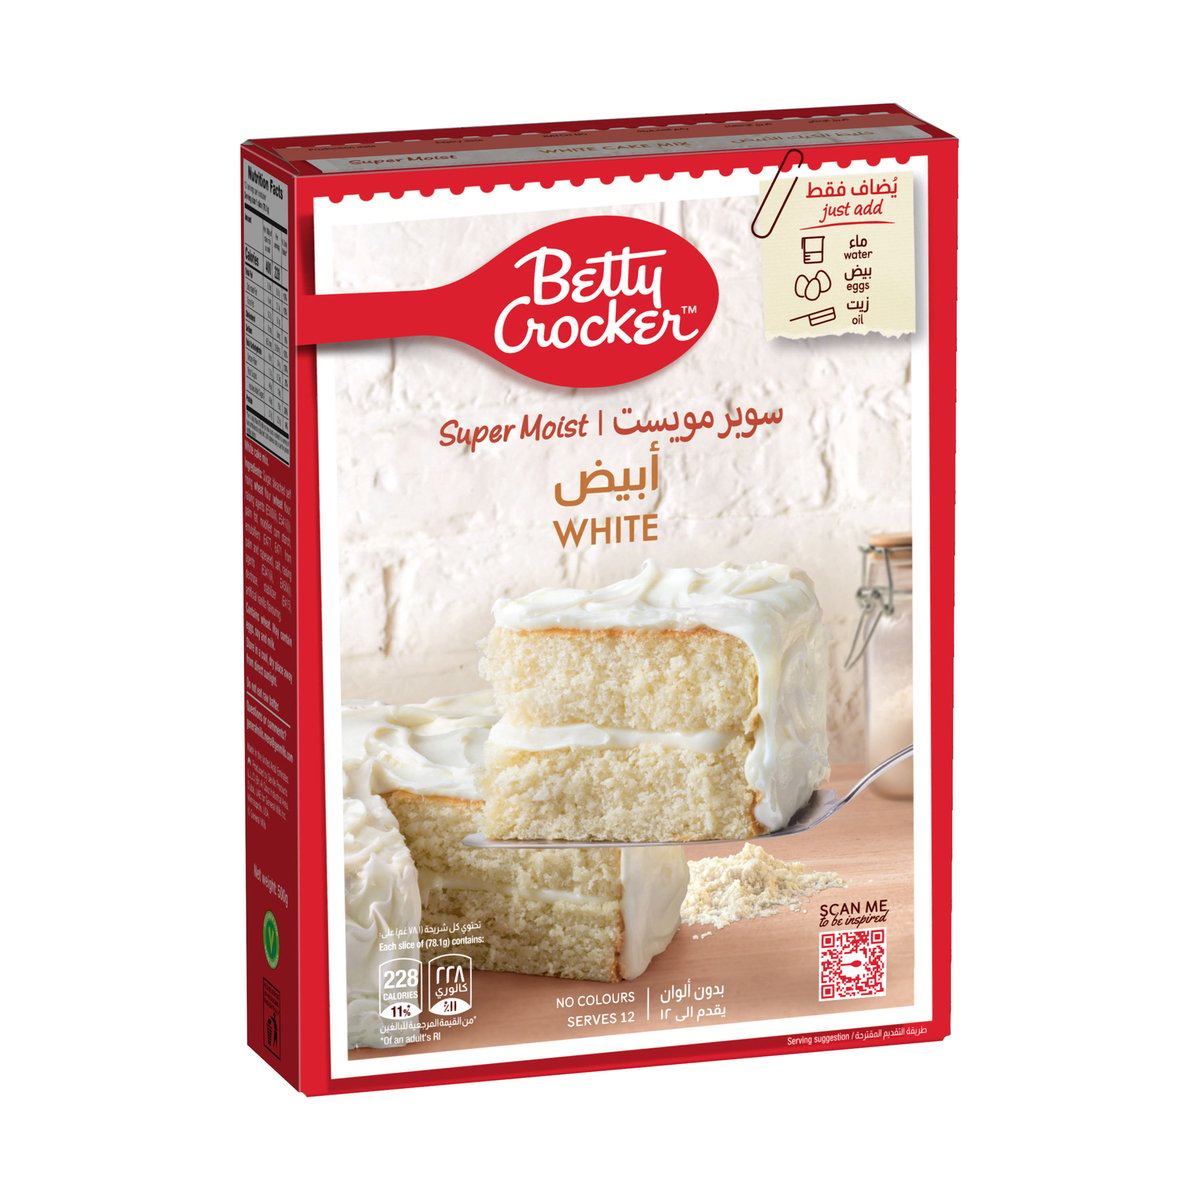 Betty Crocker Super Moist Velvety White Cake Mix 510 g